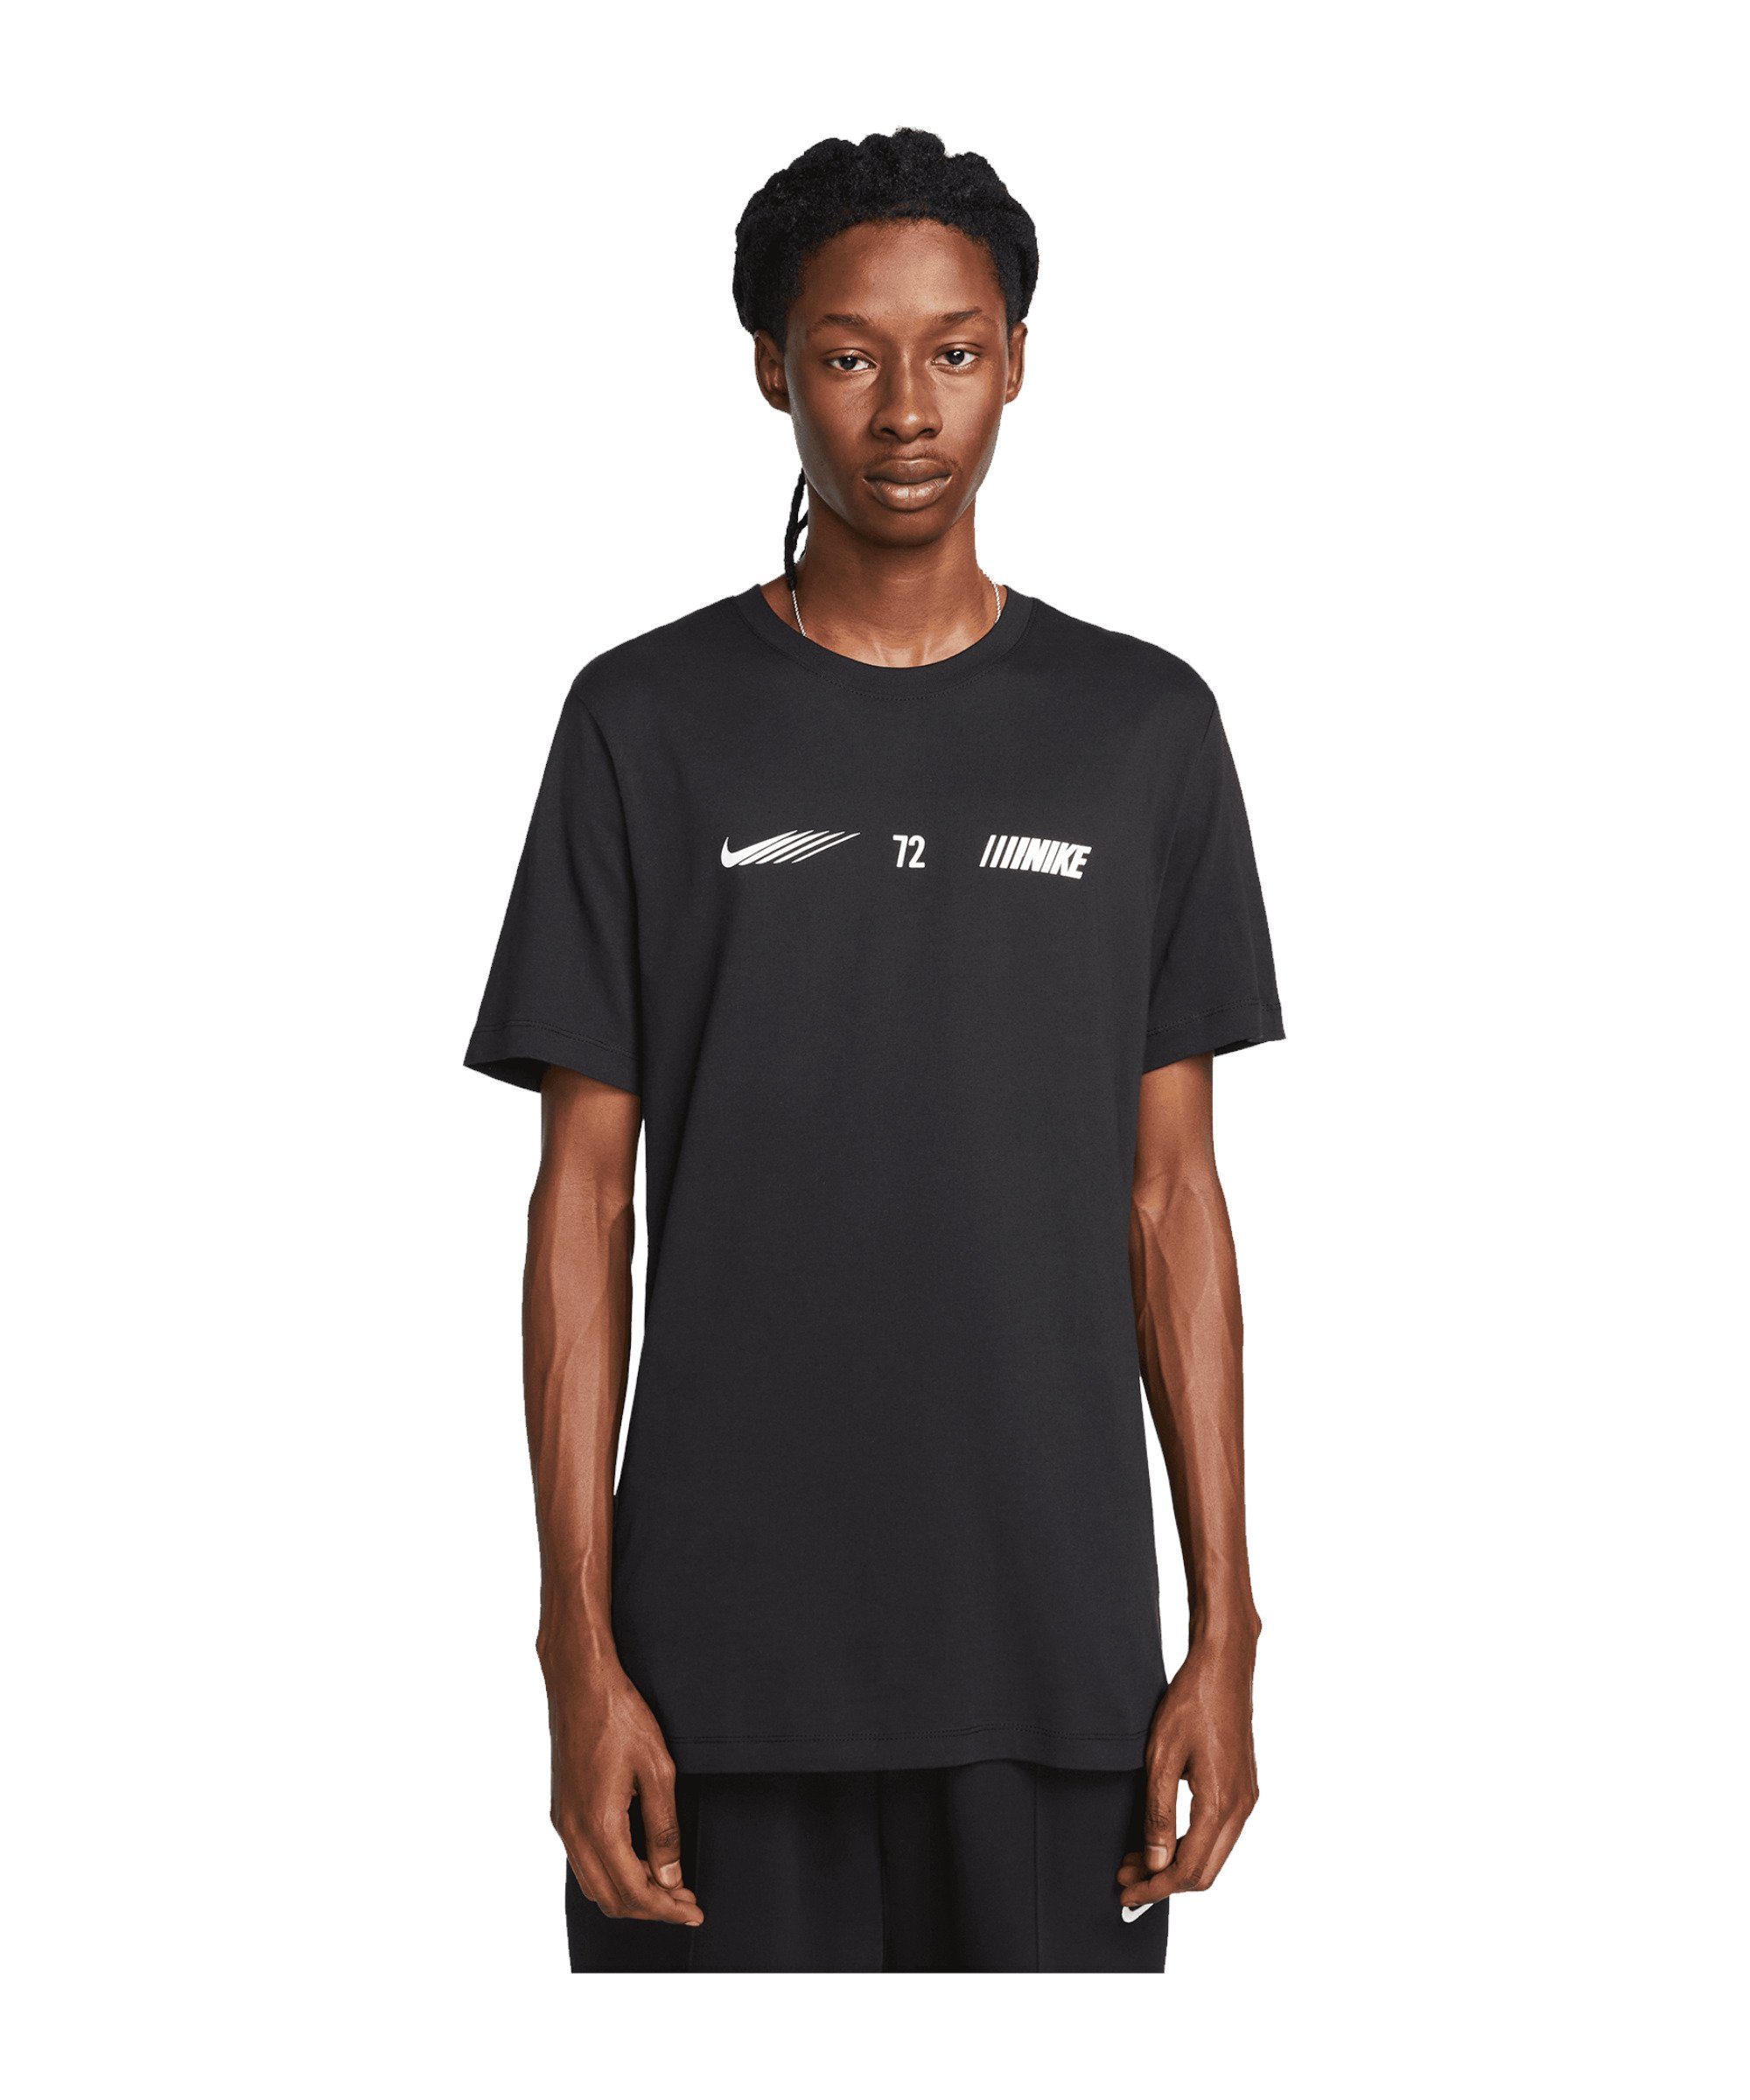 schwarz Standart T-Shirt Nike Sportswear default Issue T-Shirt